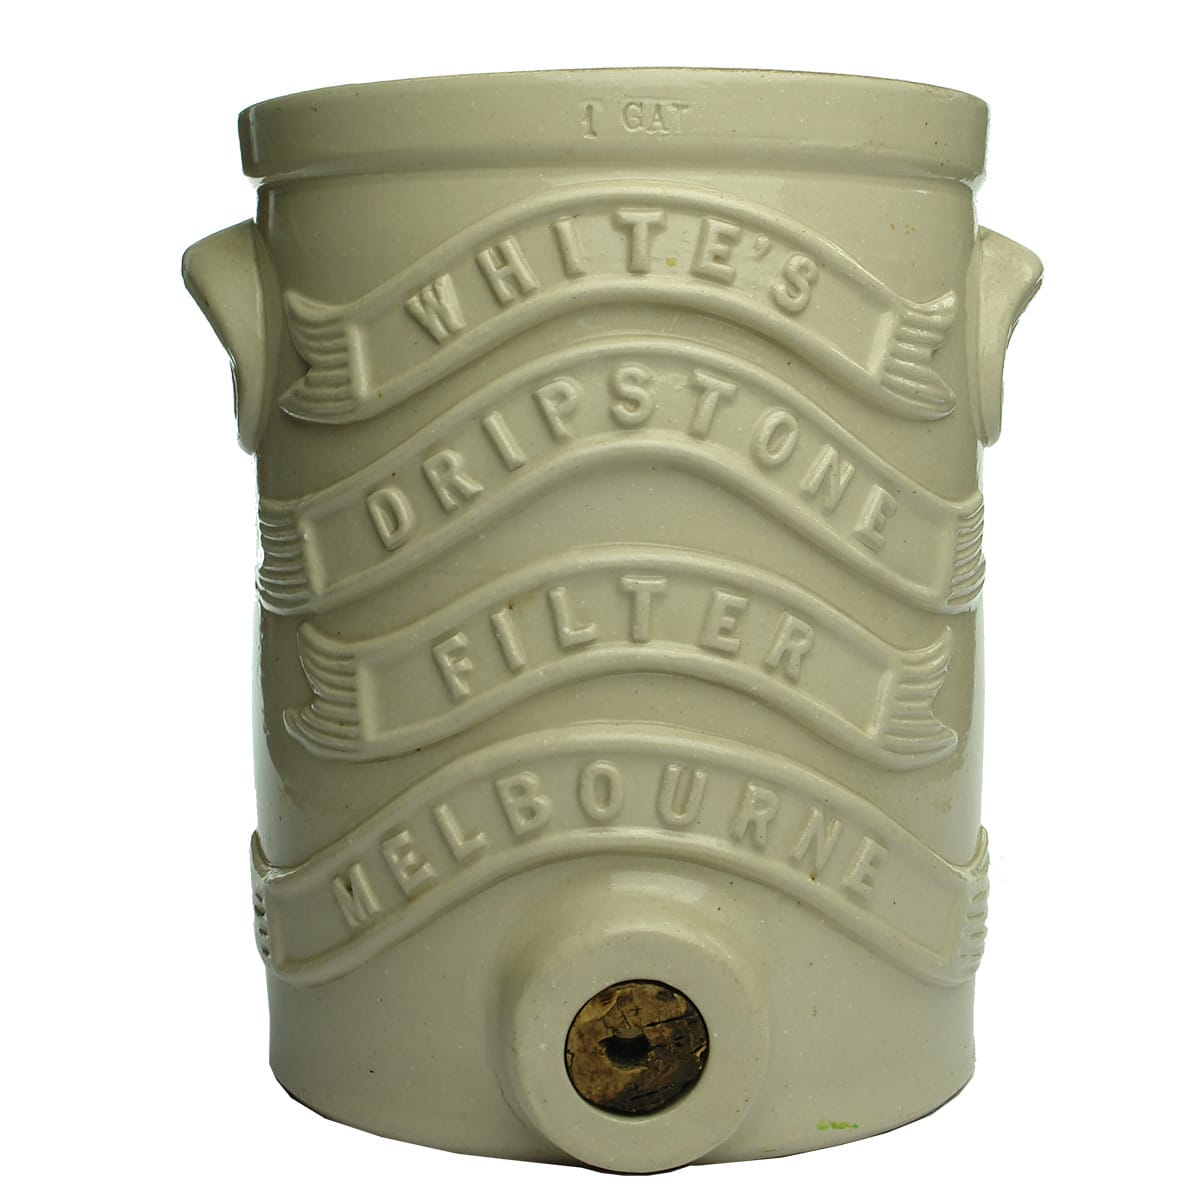 Filter. White's Dripstone Filter, Melbourne. All White. 1 Gallon. (Victoria)